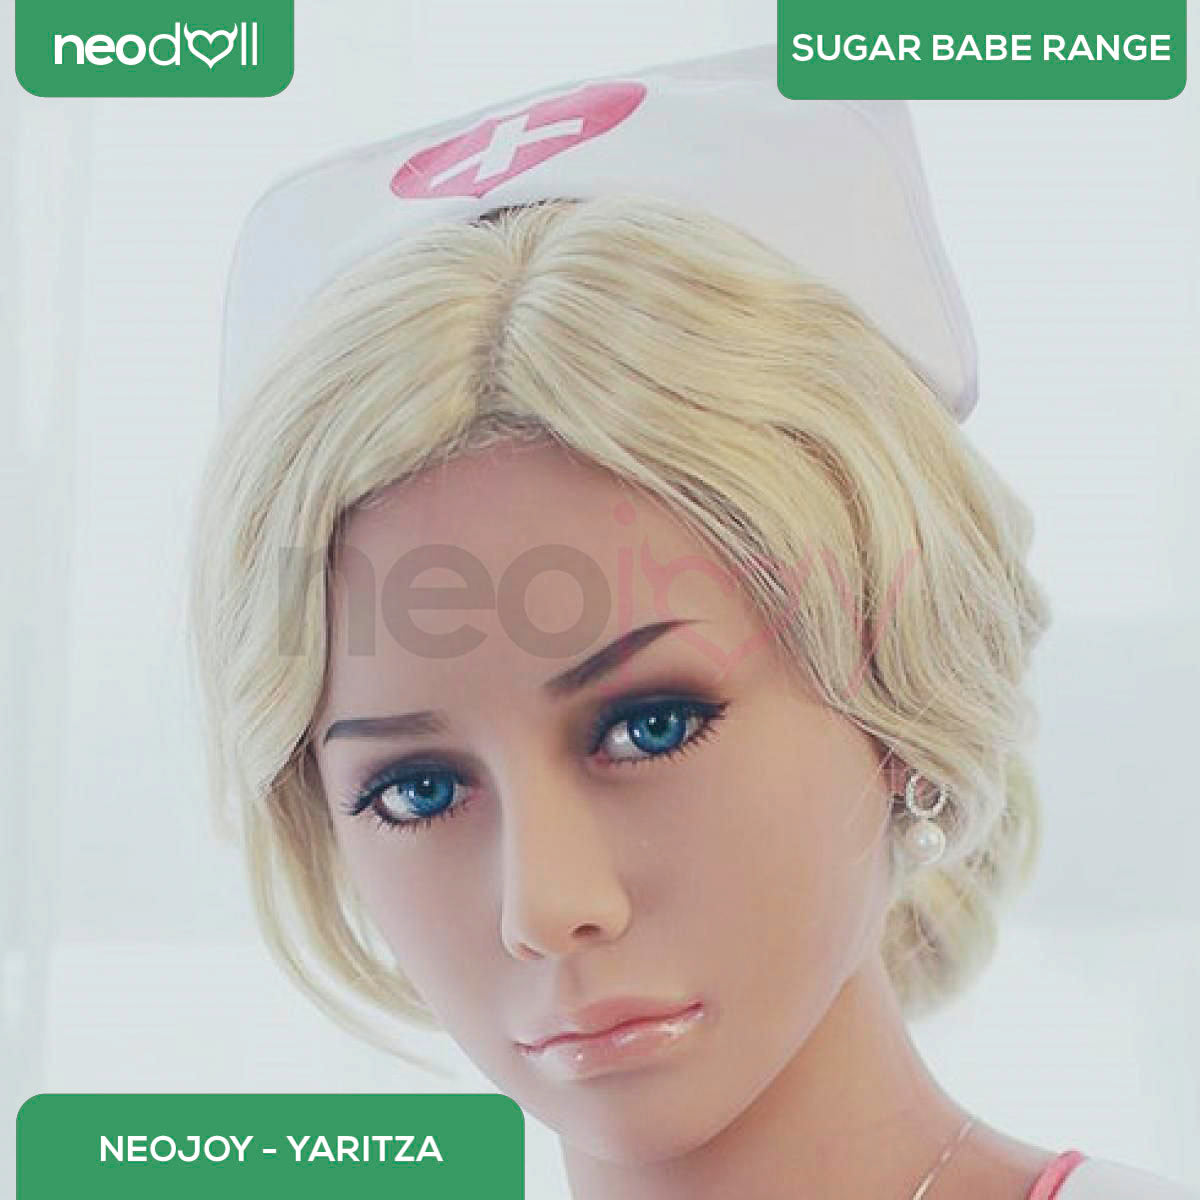 Neodoll Sugar Babe - Yaritza - Realistic Sex Doll - Gel Breast - Uterus - 158cm - Tan